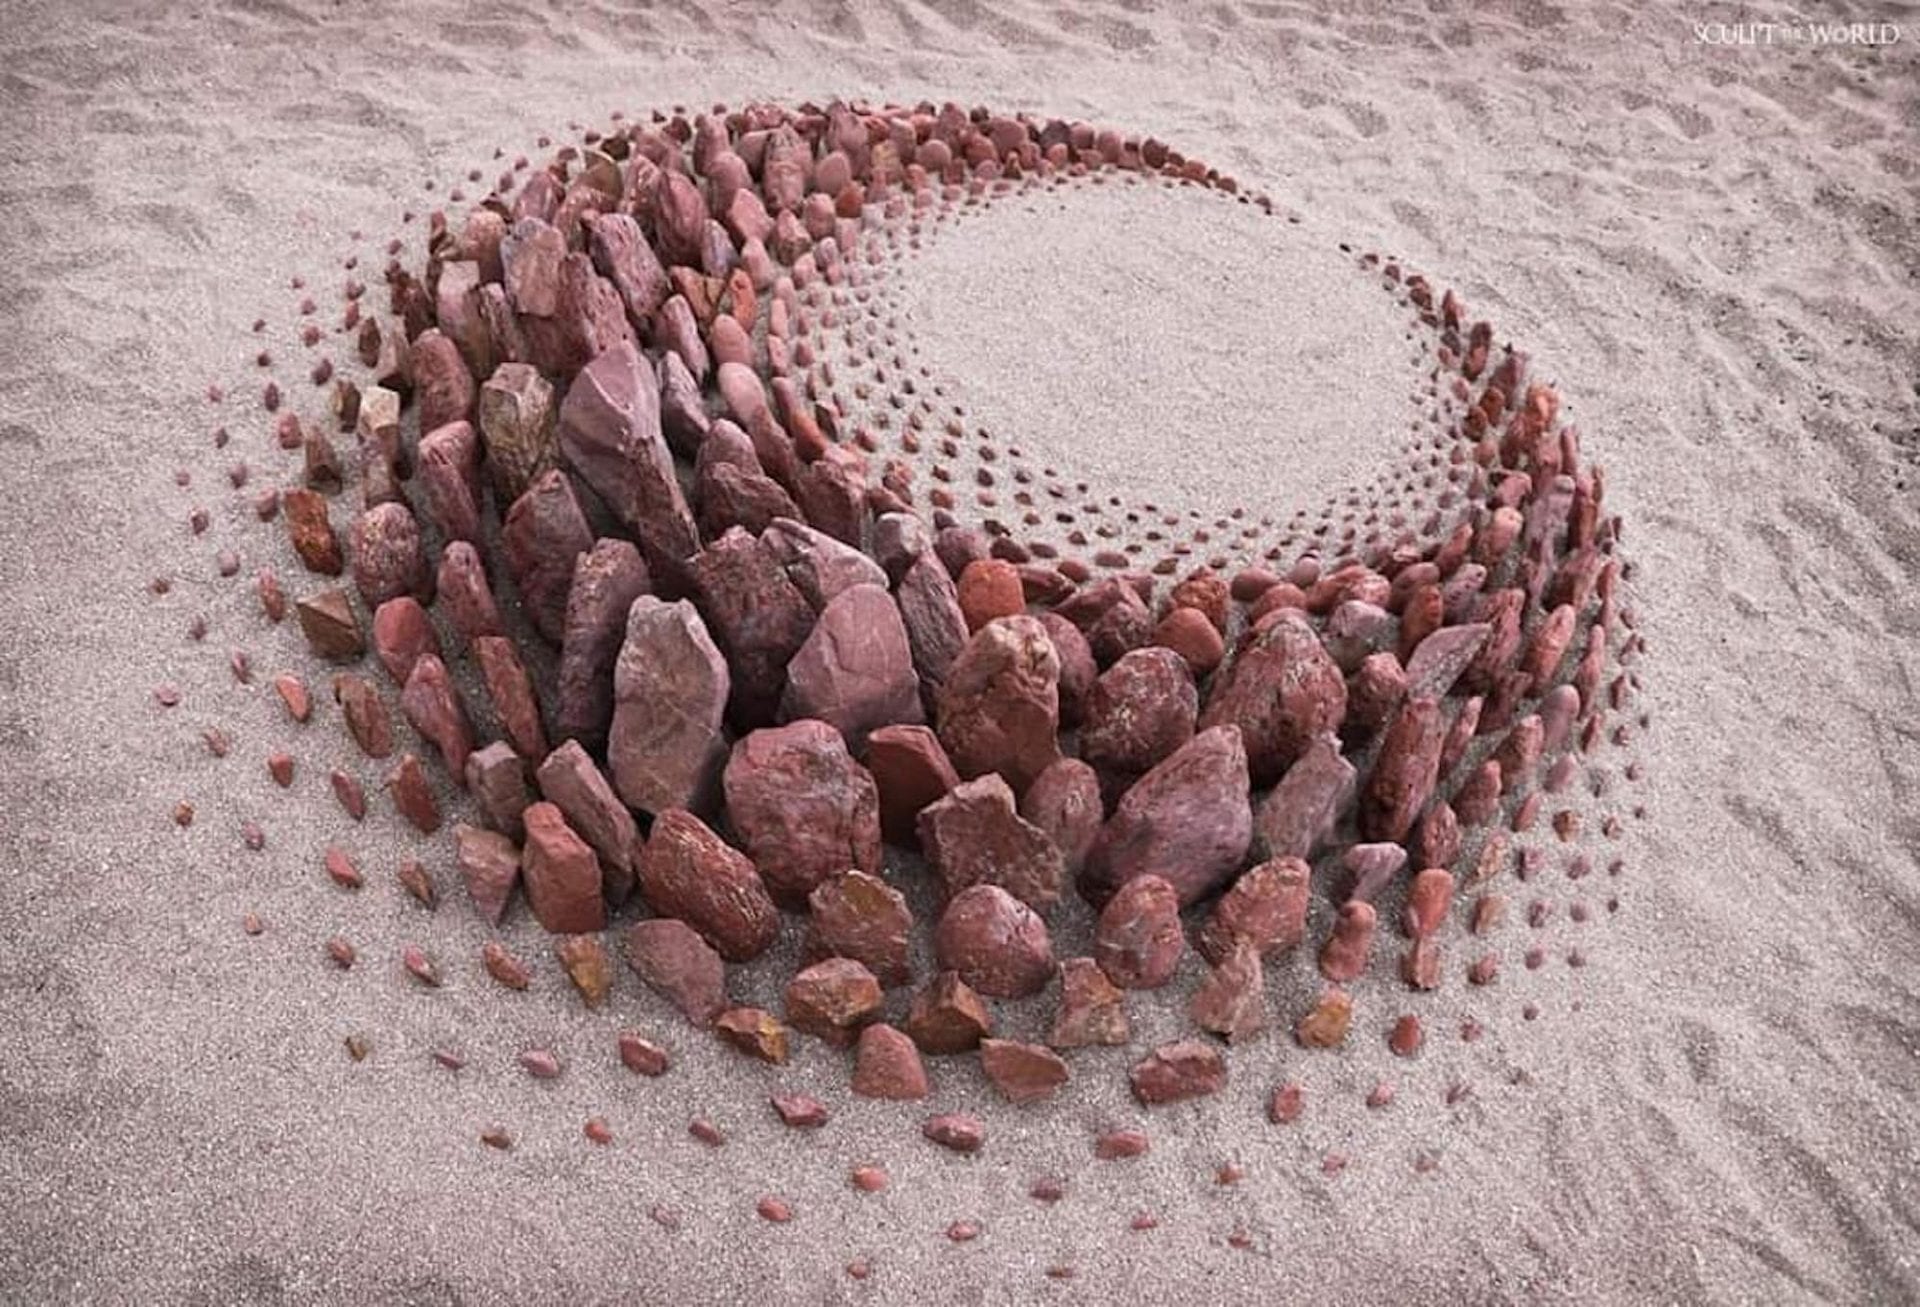 L'artiste Jon Foreman réalise des œuvres d'art fascinantes en alignant des pierres sur les plages